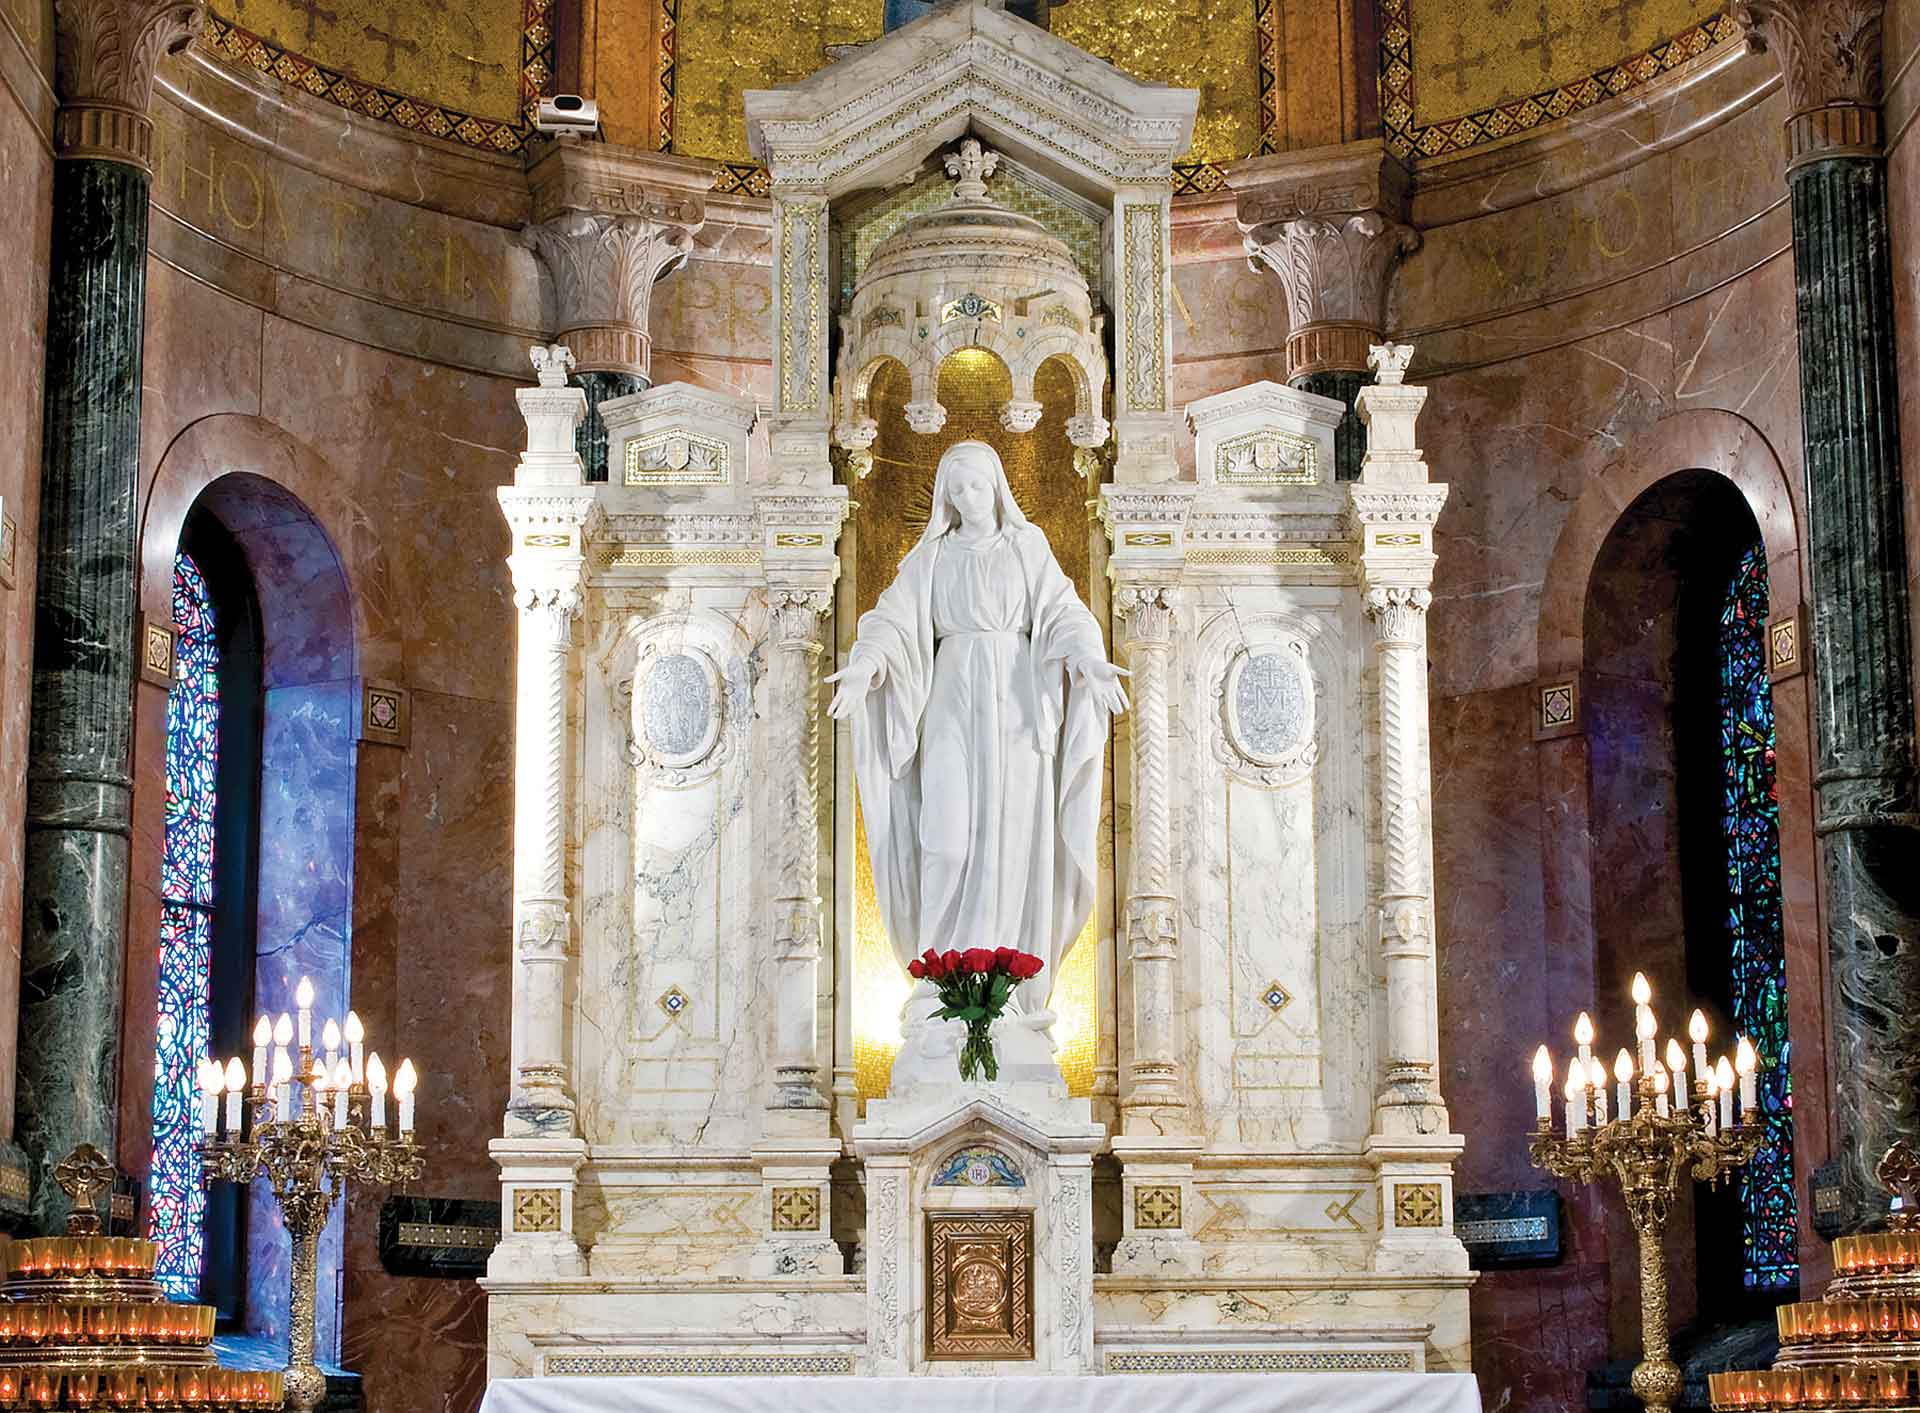 Santuario Virgen de la Medalla Milagrosa en Nuevo-León: cómo-llegar